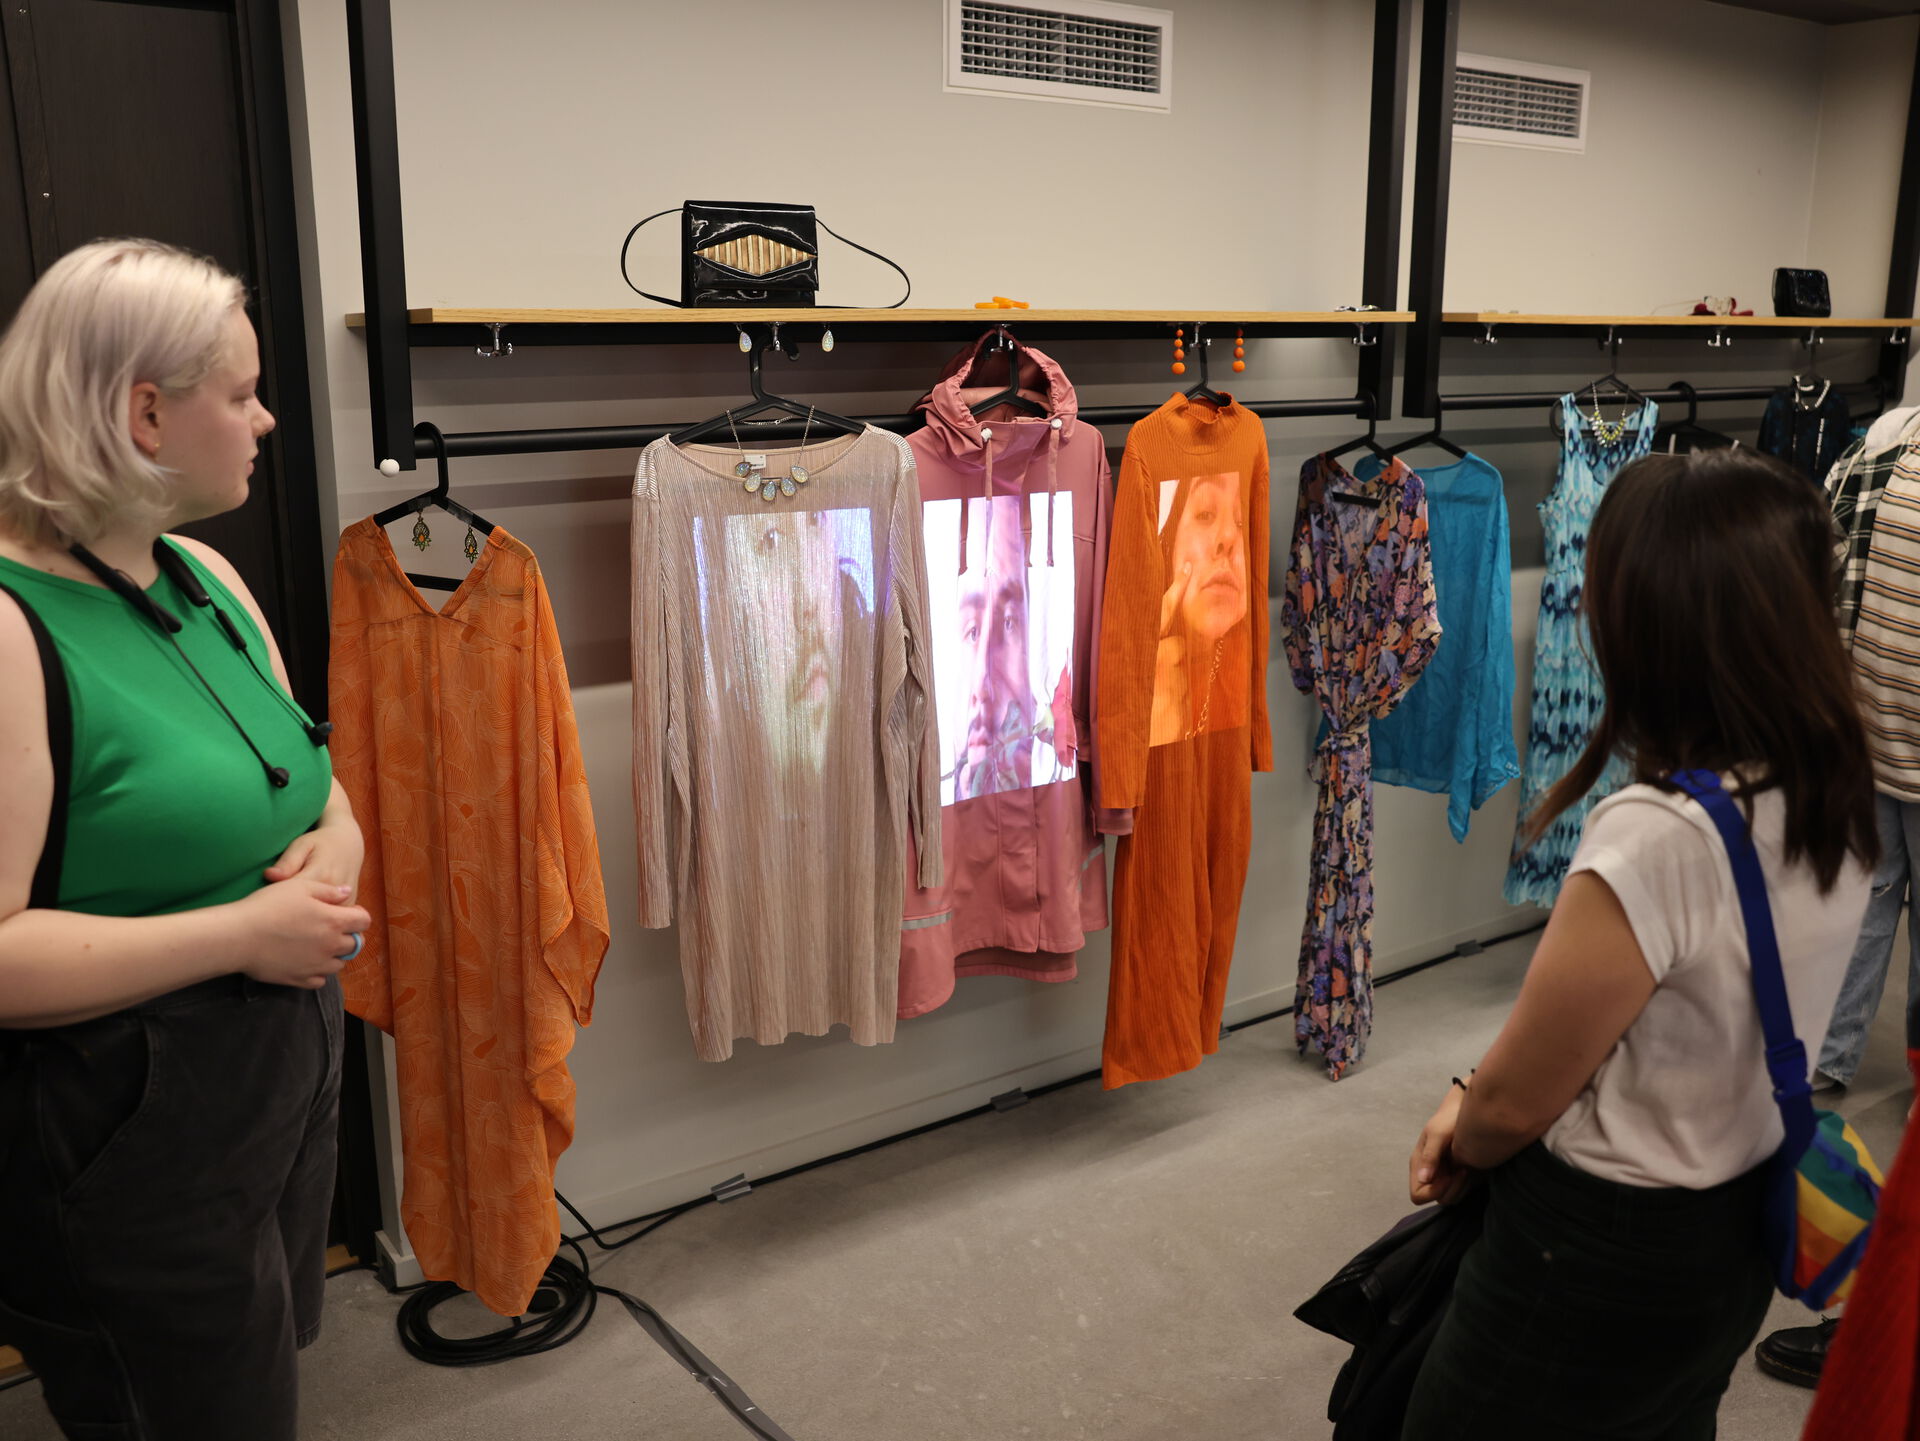 Bildet viser flere kjoler hengende i en garderobe. En prosjektor viser levende bilder av ansikter på kjolene, som dermed fungerer som et slags lerret.